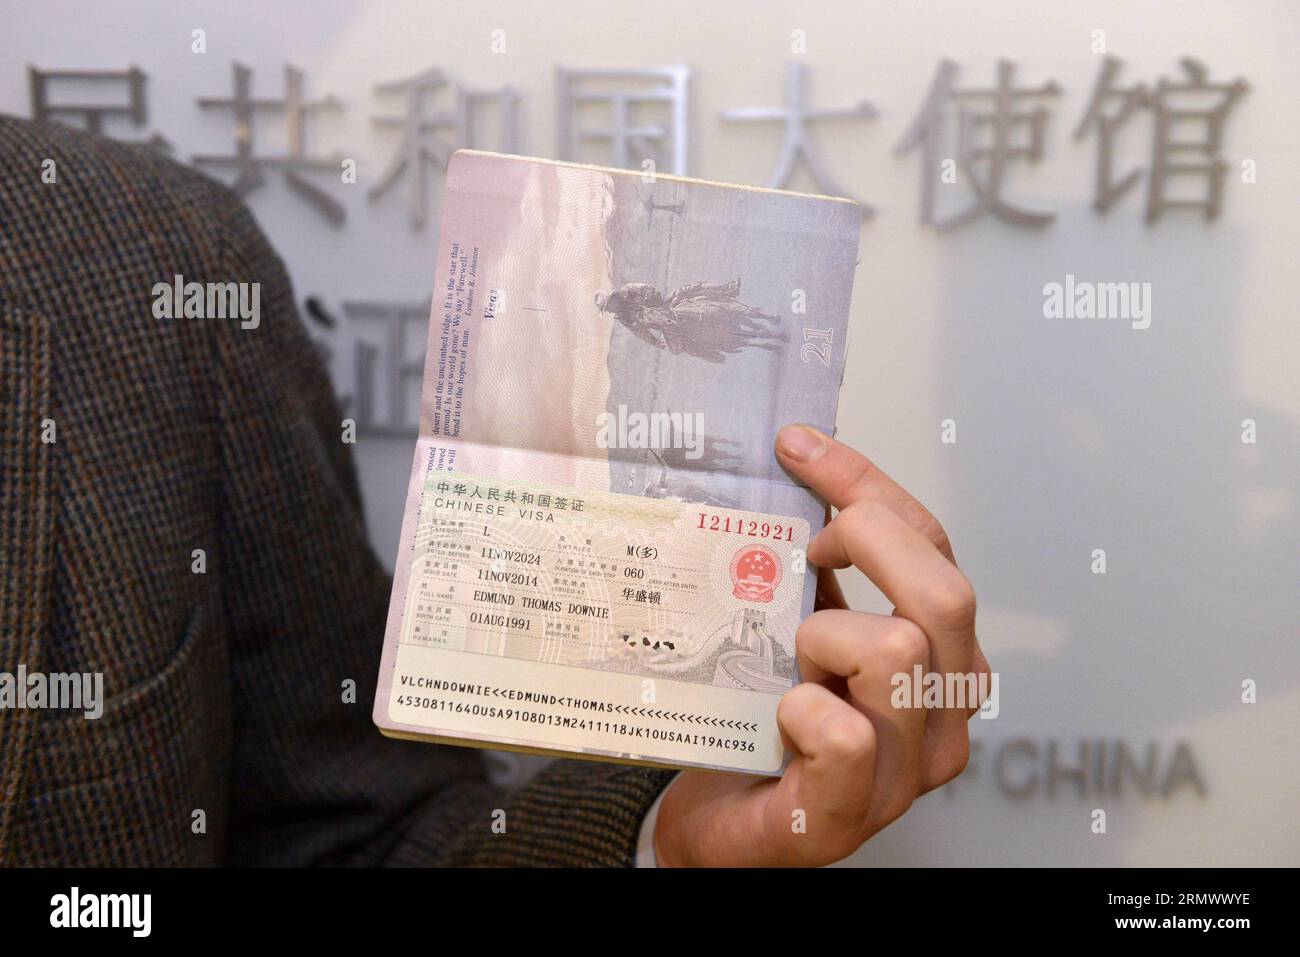 141112 -- WASHINGTON D.C., 12 novembre 2014 -- Edmund Thomas Downie mostra il suo visto alla stampa dopo essere diventato il primo cittadino americano a ricevere un visto decennale presso il Dipartimento visti dell'Ambasciata cinese negli Stati Uniti a Washington D.C., 12 novembre 2014. La Cina ha rilasciato il primo gruppo di visti con validità decennale ai cittadini statunitensi qui mercoledì, implementando un nuovo accordo che dovrebbe stimolare lo scambio tra i due paesi. US-WASHINGTON D.C.-CINA-RILASCIO DEL VISTO DECENNALE YINXBOGU PUBLICATIONXNOTXINXCHN Foto Stock